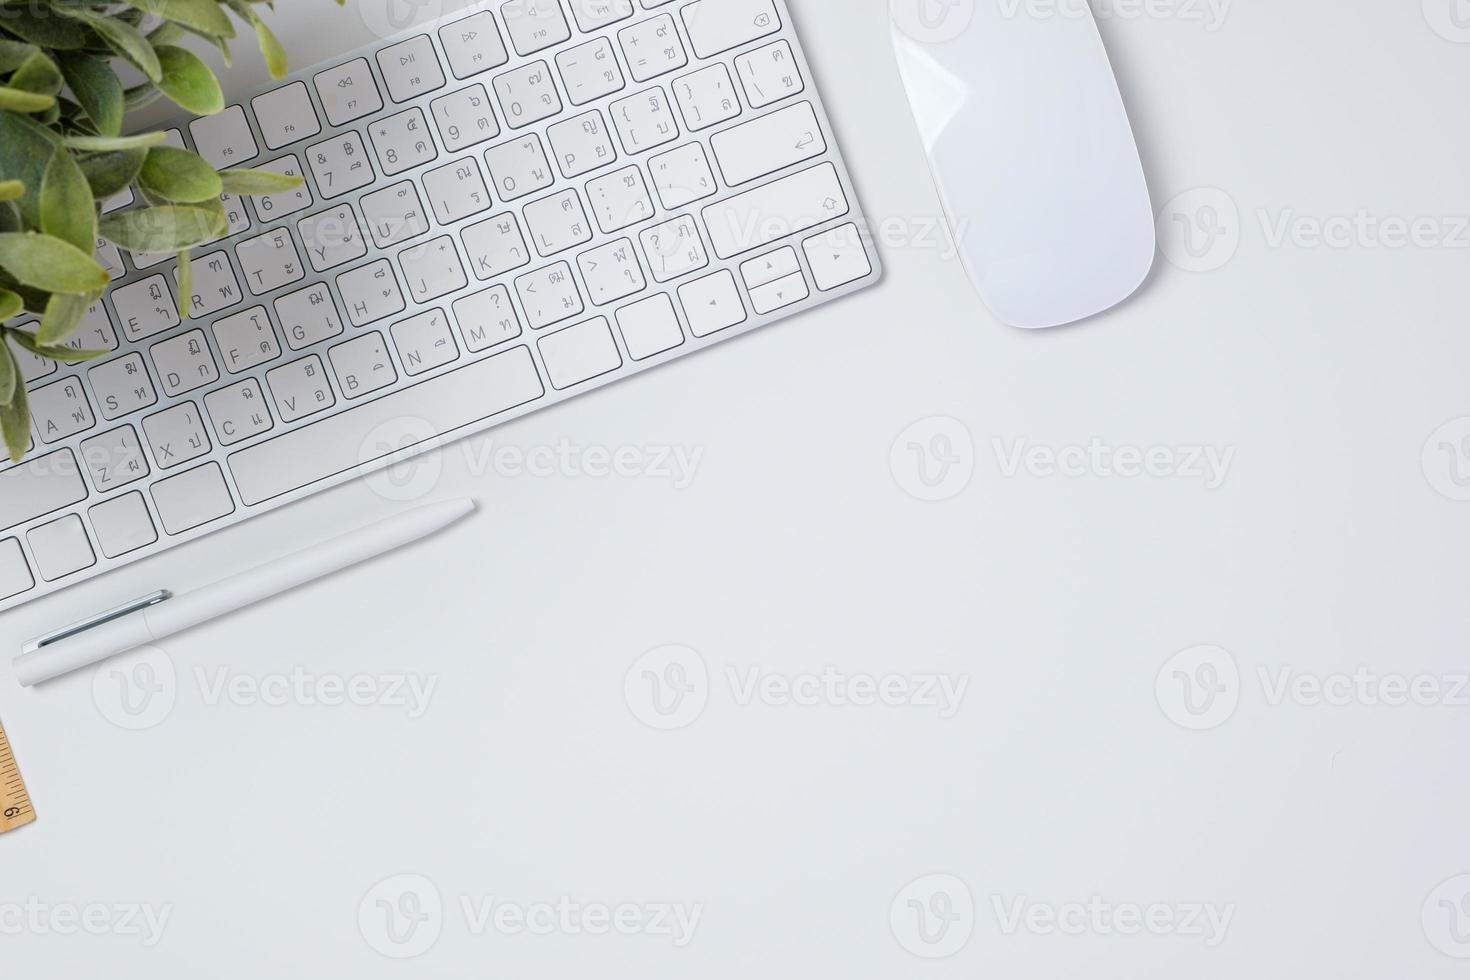 escritorio de trabajo de vista superior con teclado, mouse y portátil en el fondo de la mesa blanca foto